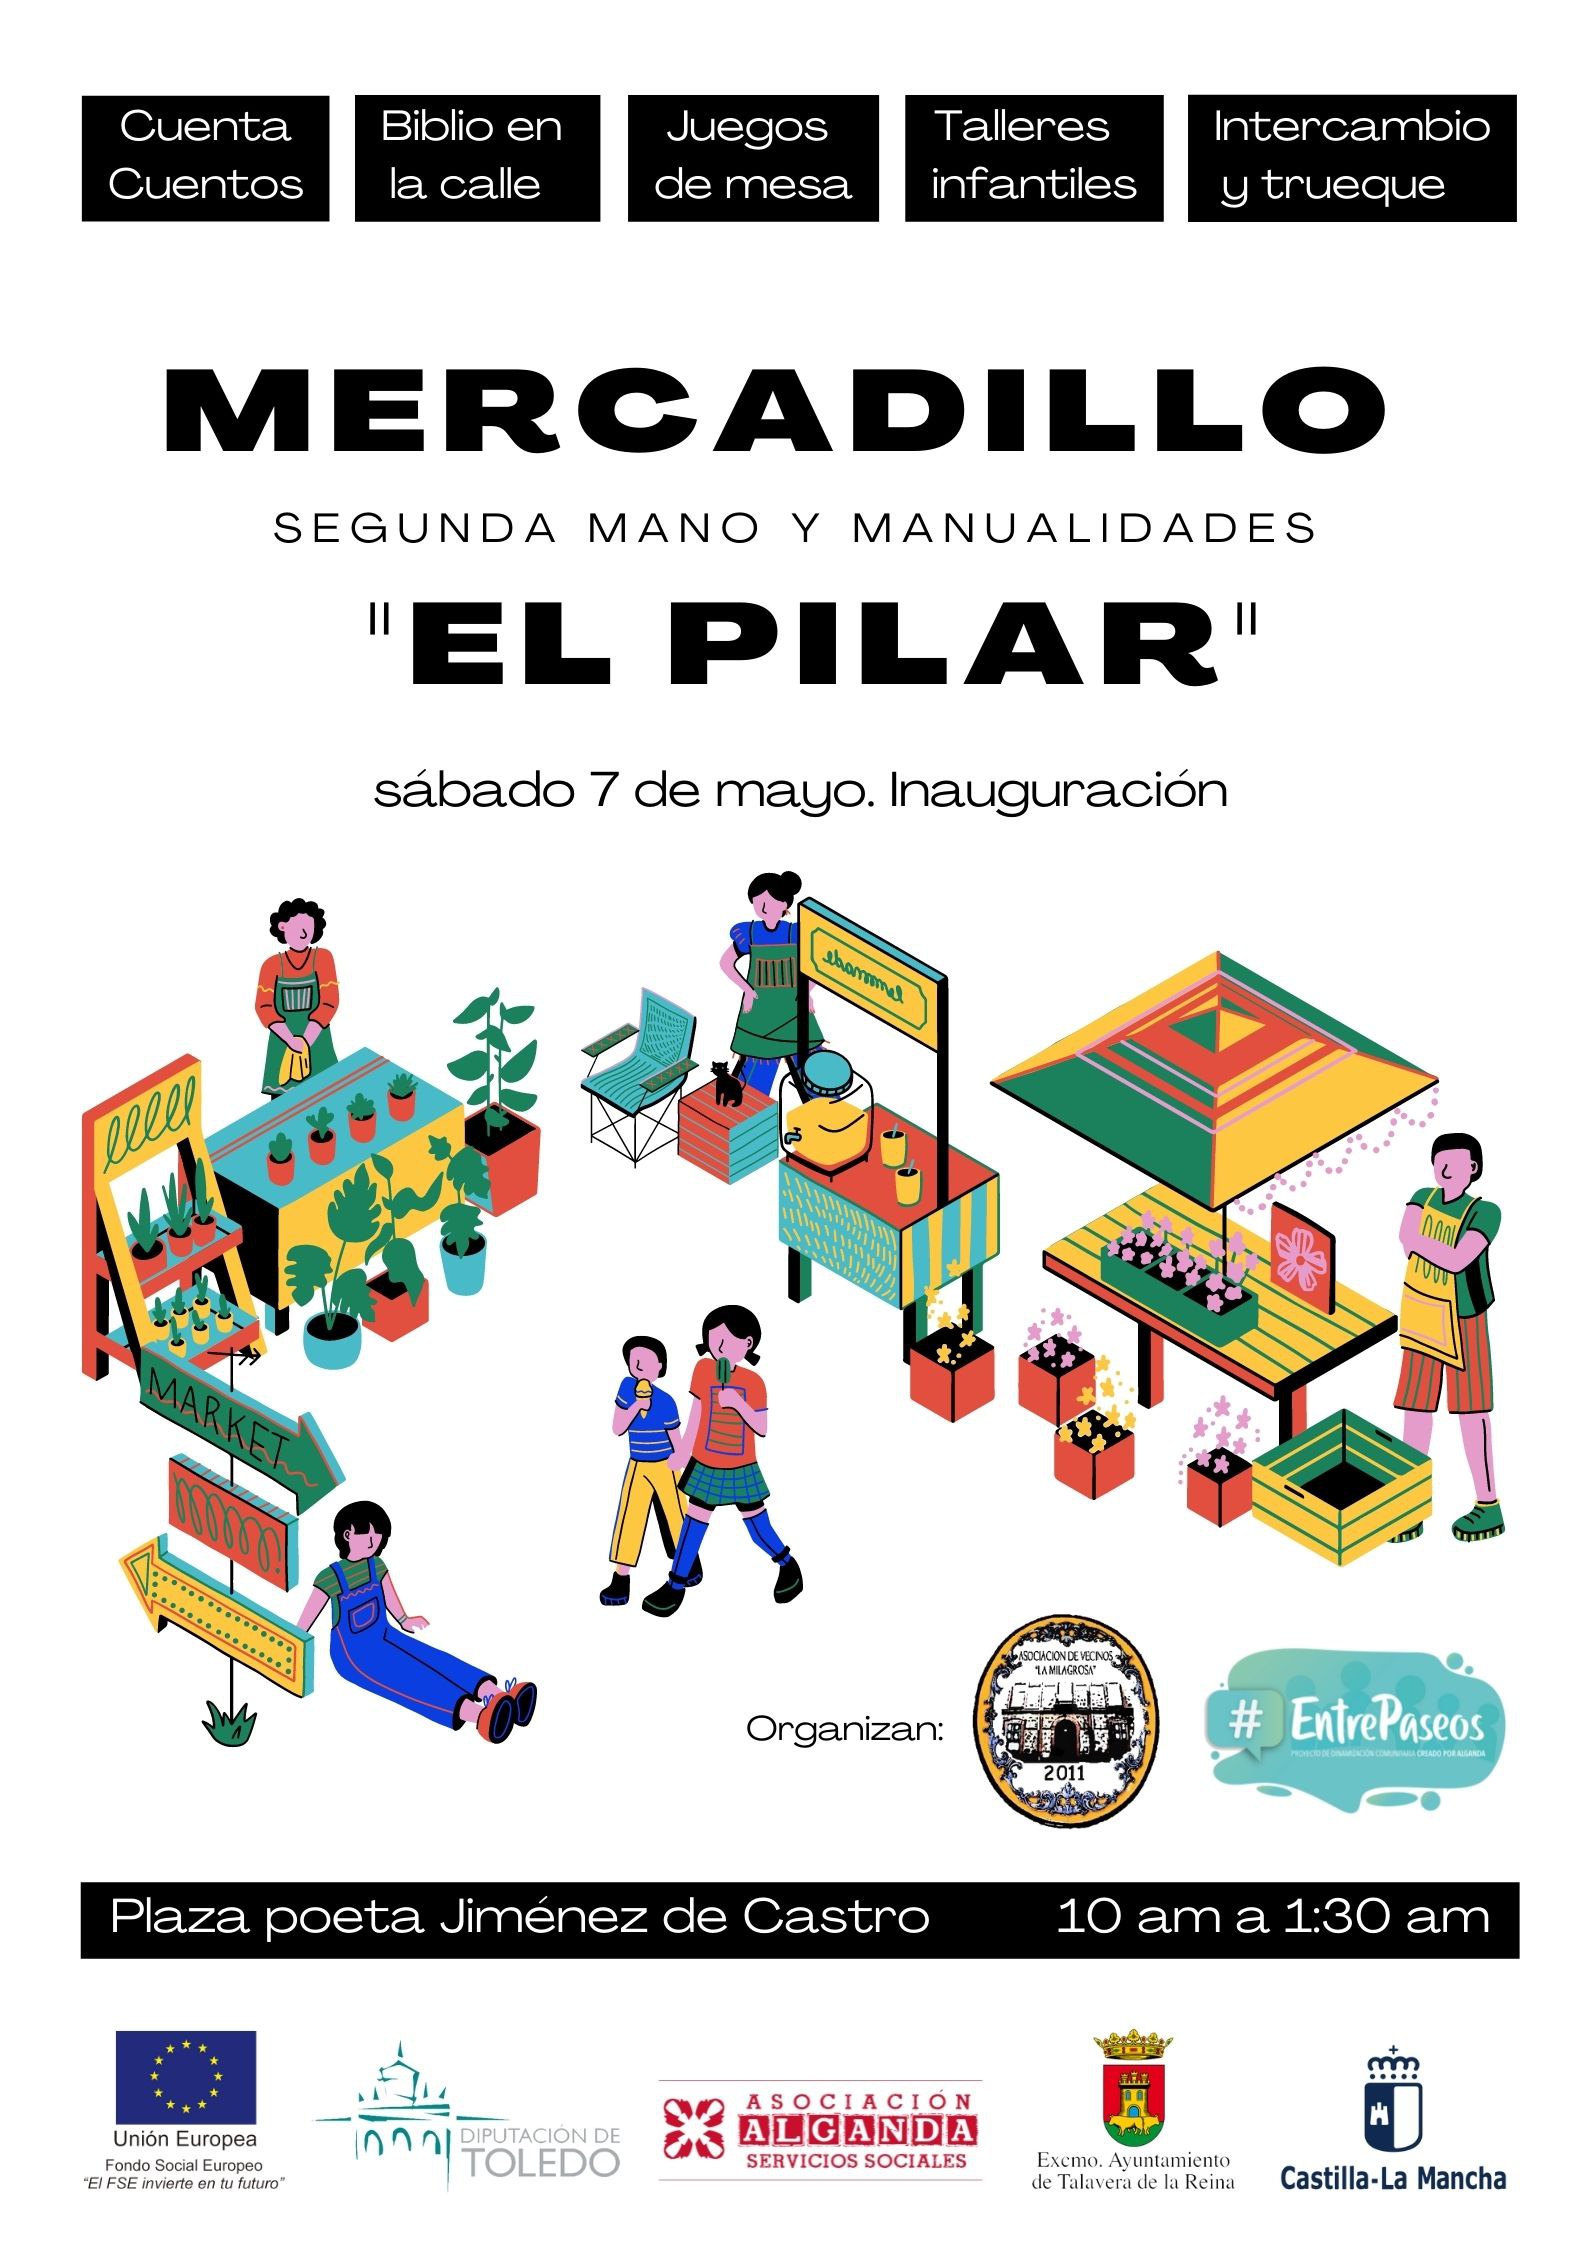 El barrio de El Pilar estrena Mercadillo de Segunda Mano y Manualidades